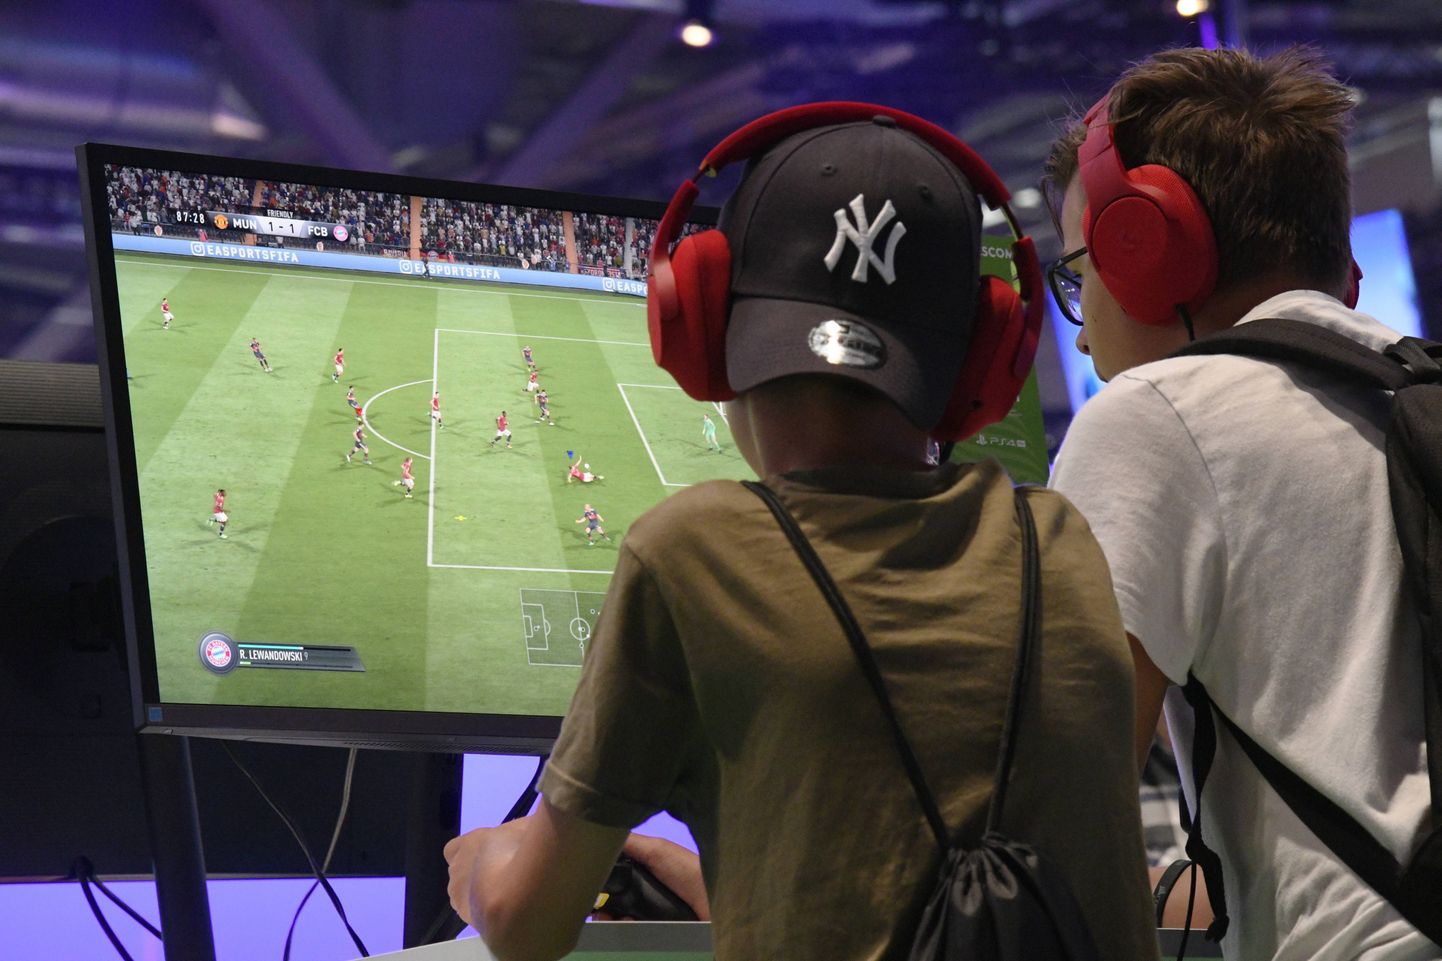 FIFA arvutimängu mängijatel avaneb mõne kuu pärast võimalus saada profisportlasteks.